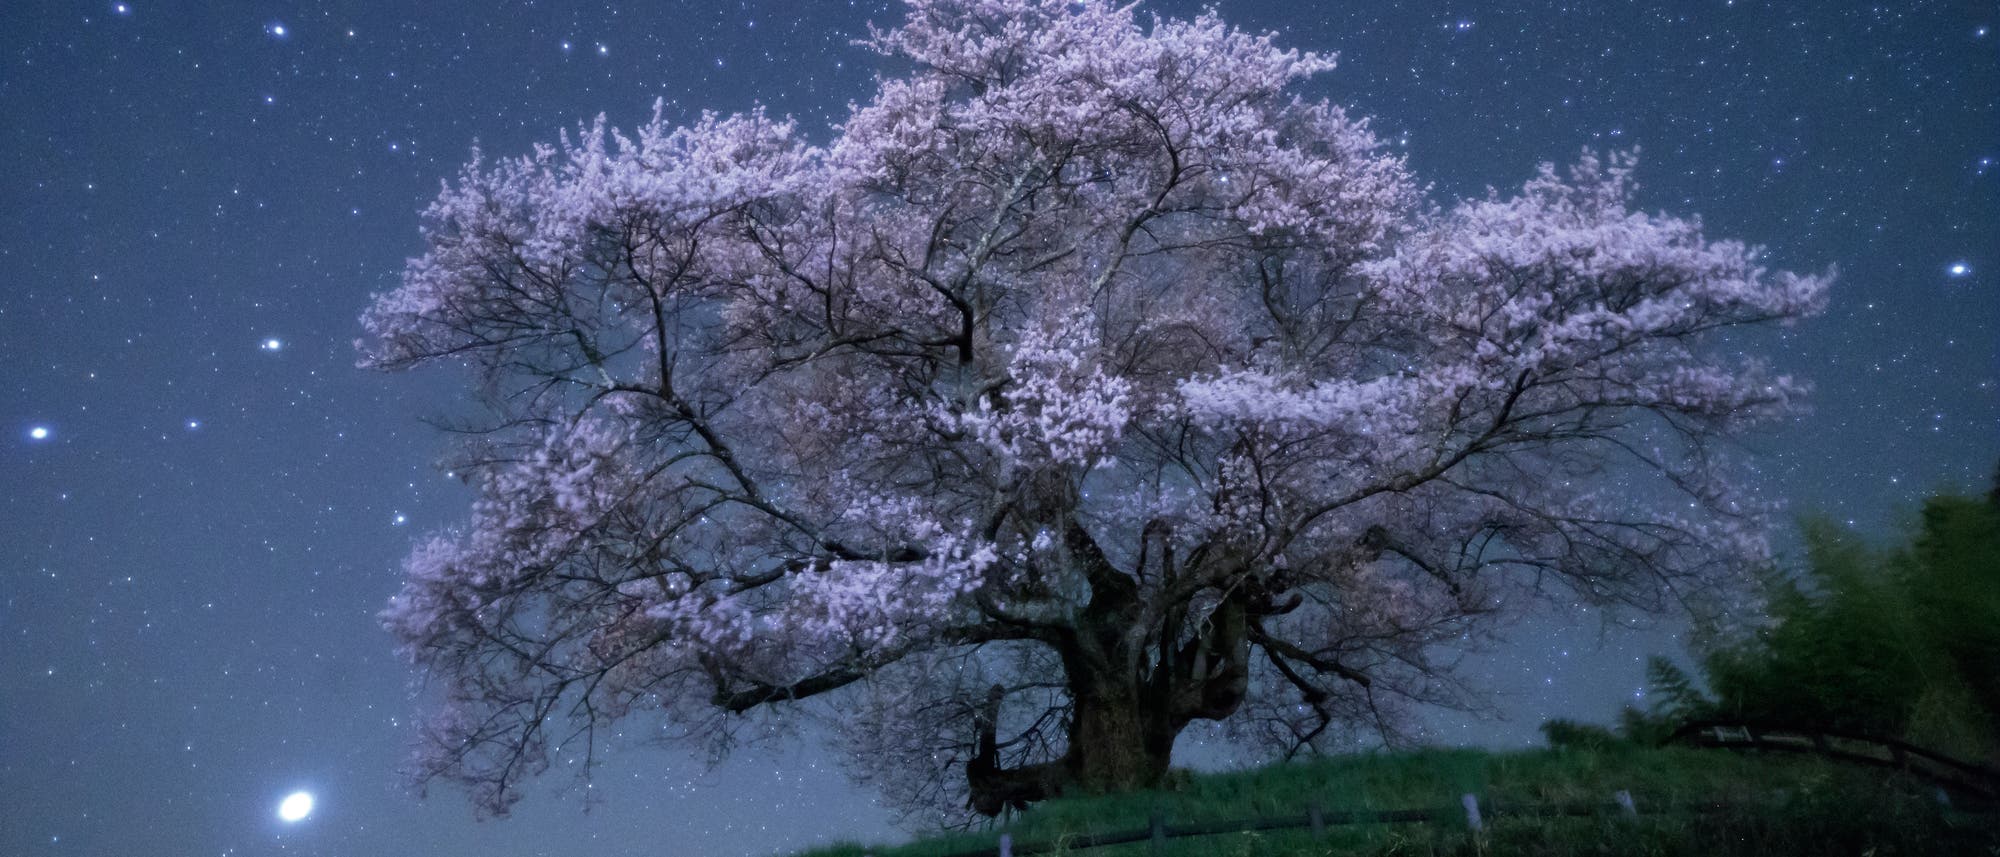 Ein 500 Jahre alter Kirschbaum in der japanischen Präfektur Gunma hebt sich gegen den Nachthimmel ab. In der japanischen Kultur hat die Kirschblüte – Sakura genannt – eine große Bedeutung. Sie markiert den Anfang des Frühlings und ist ein Symbol für die weibliche Schönheit.